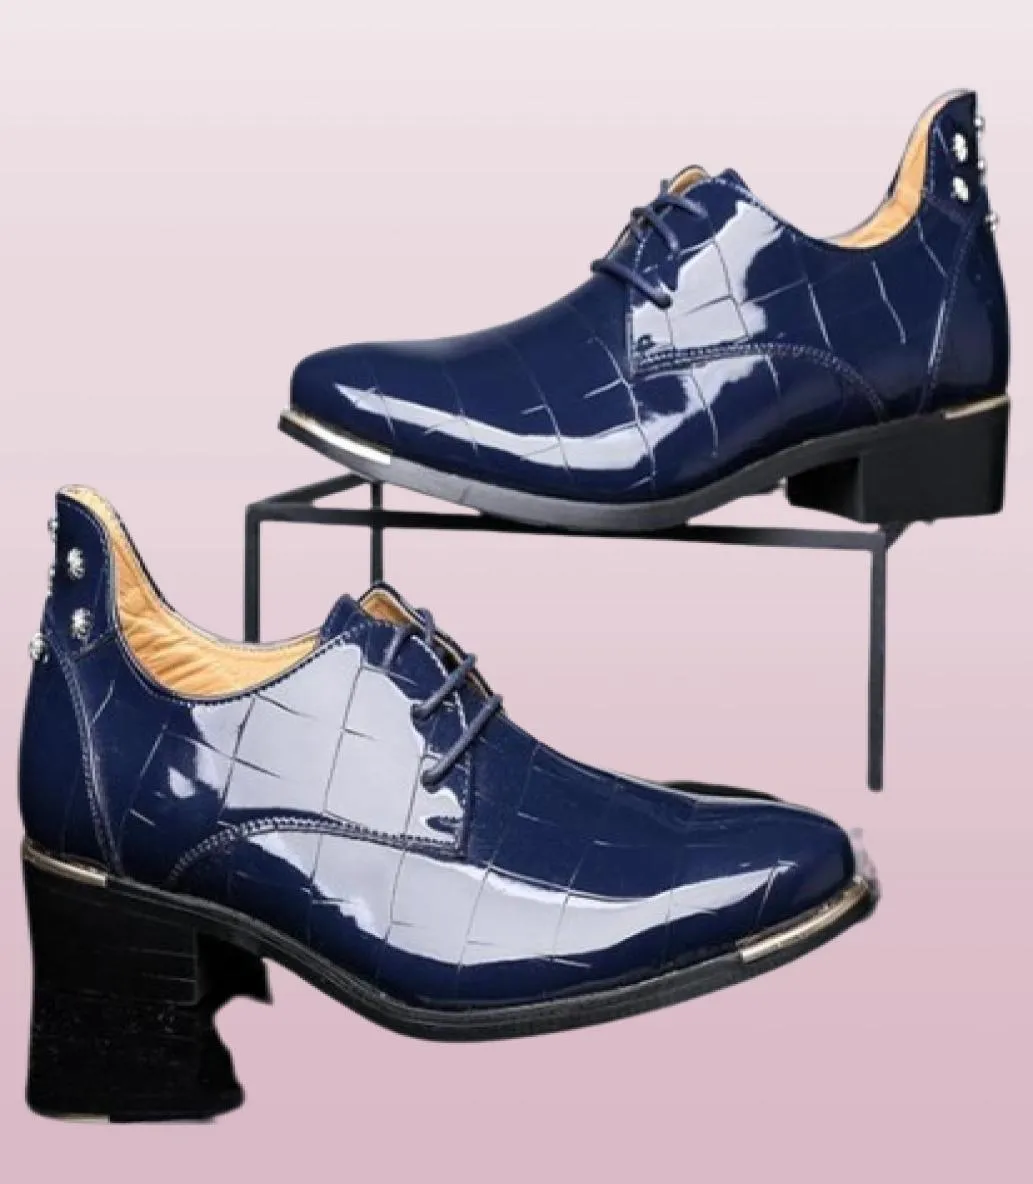 Джентльменные туфли обувь мужские популярные дизайнерские лоферы Ins Men Laceup Flats Business Mix Стильные обувь платья платья ZY9382269677